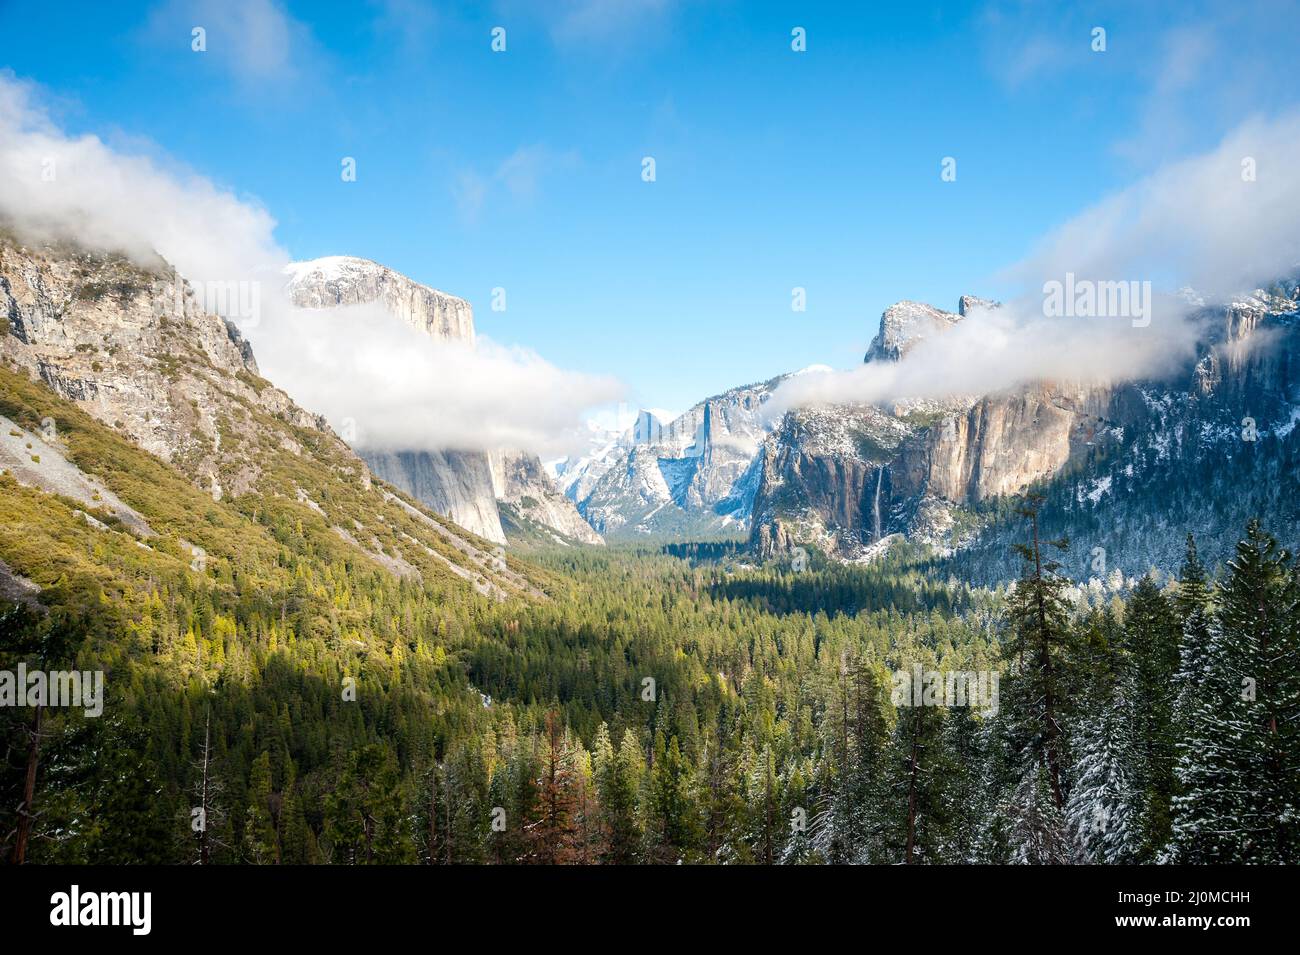 Winter snow scene in Yosemite National Park Stock Photo